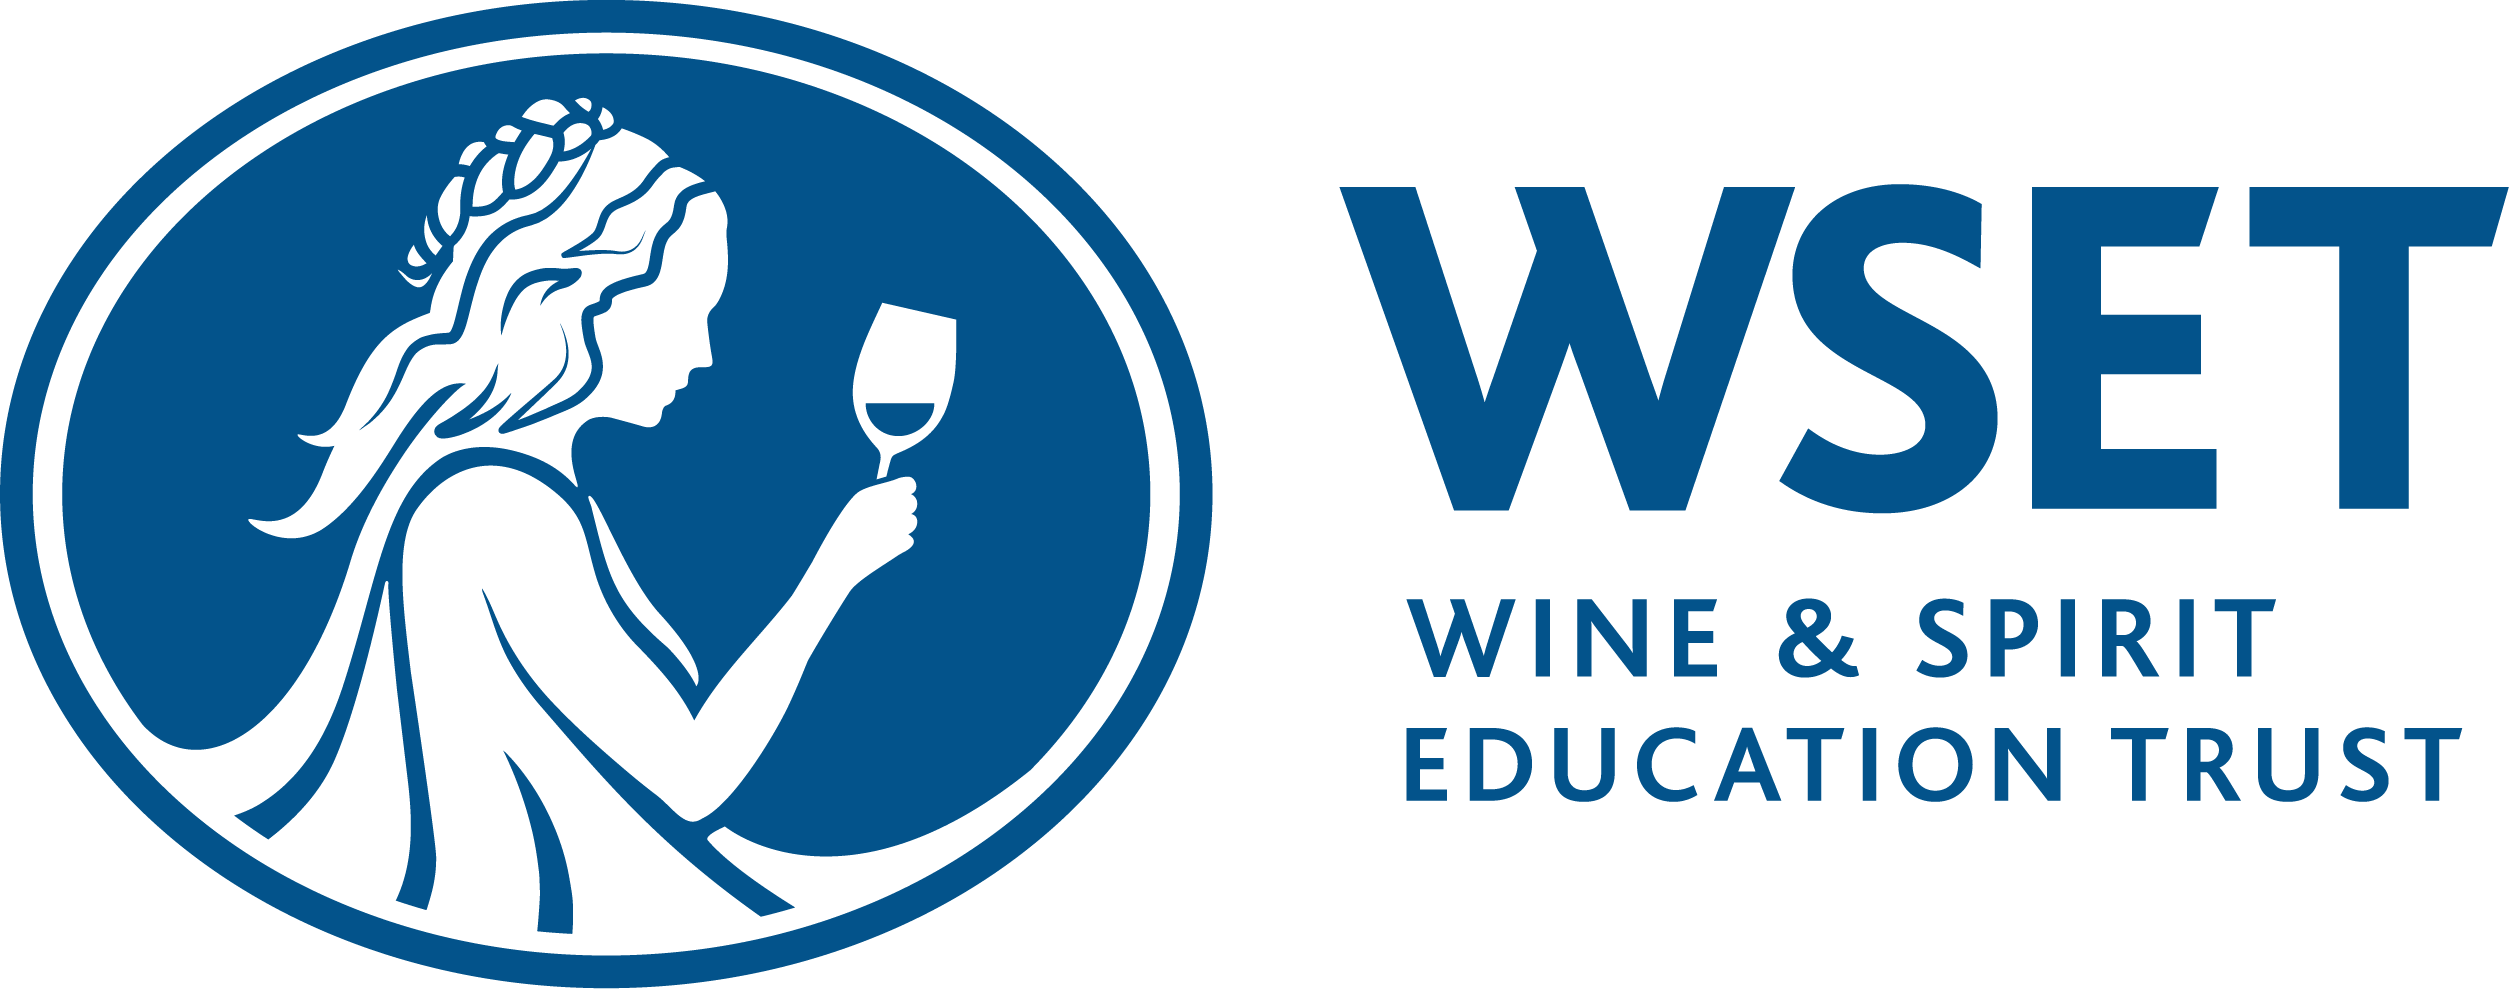 Wine & Spirit Education Trust (WSET)